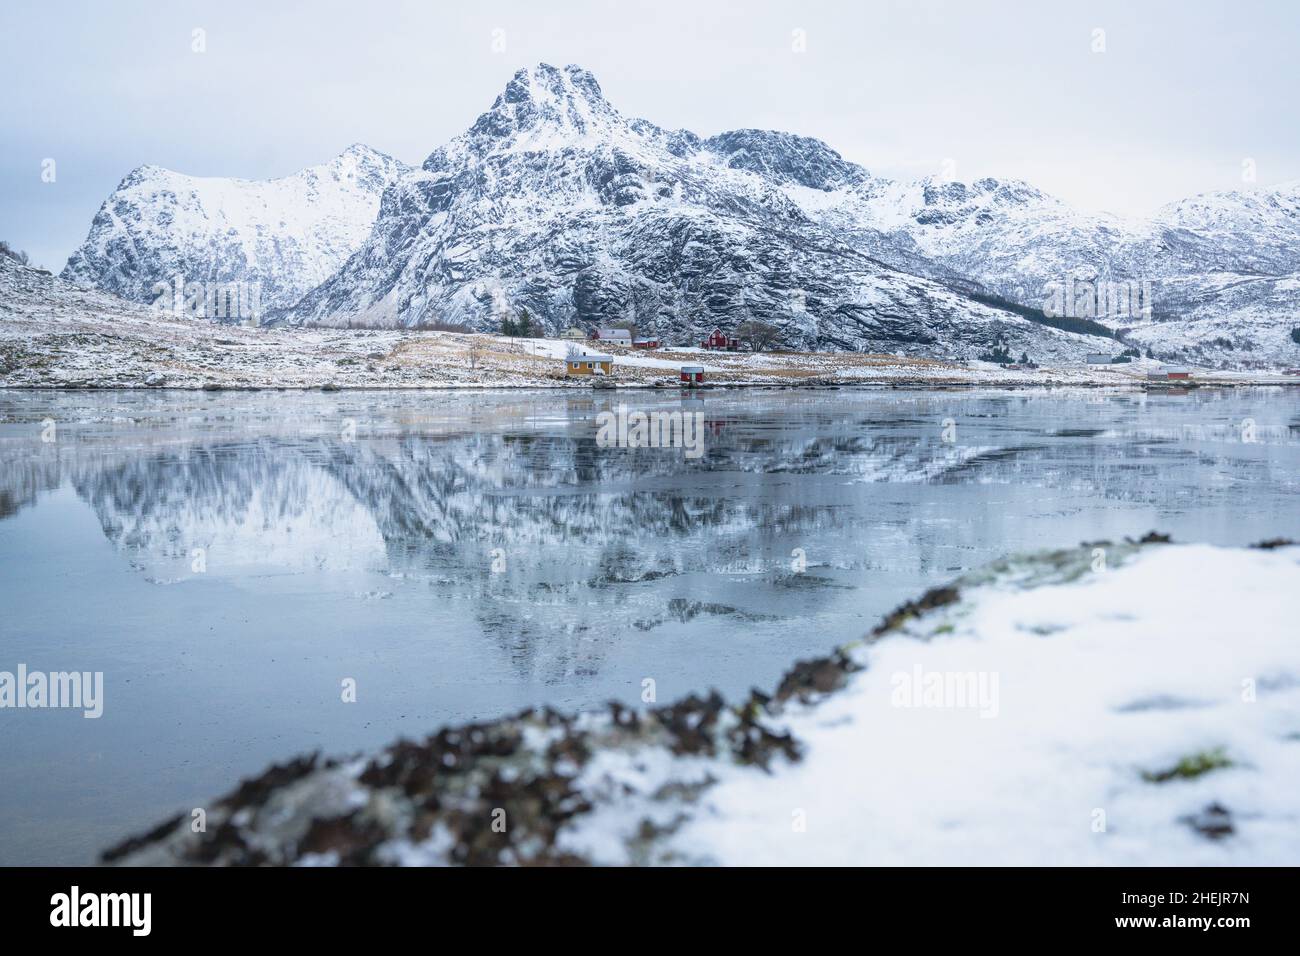 Fiordo congelato con montagne innevate che si riflettono nell'acqua, Flakstadpolline, Flakstadoya, Nordland, Isole Lofoten, Norvegia Foto Stock